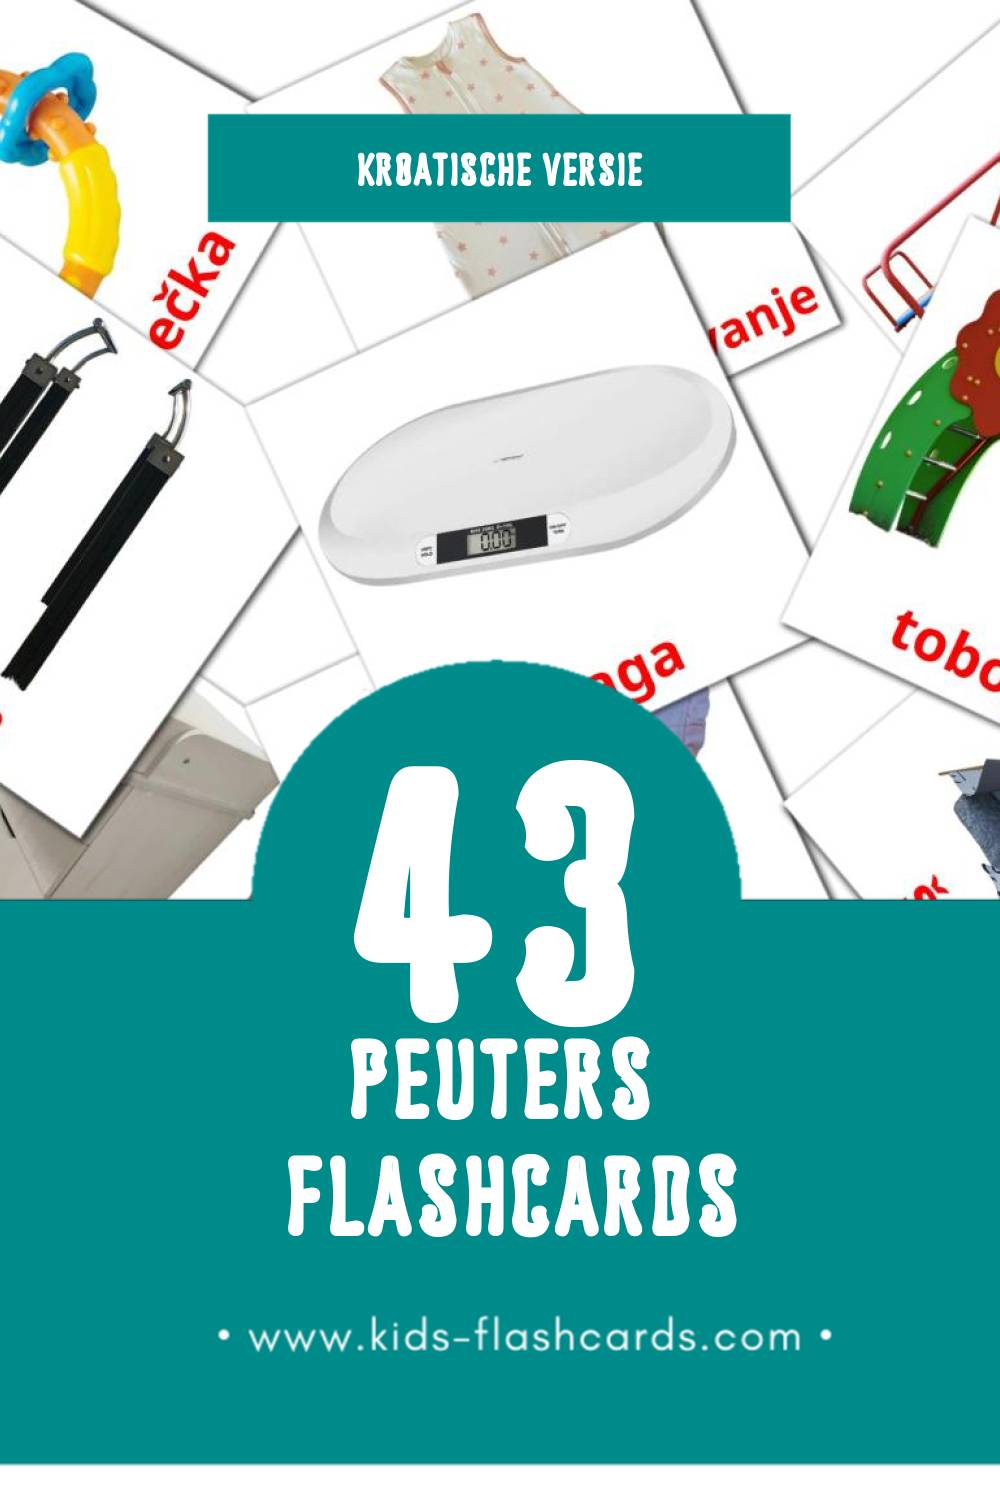 Visuele beba Flashcards voor Kleuters (43 kaarten in het Kroatisch)